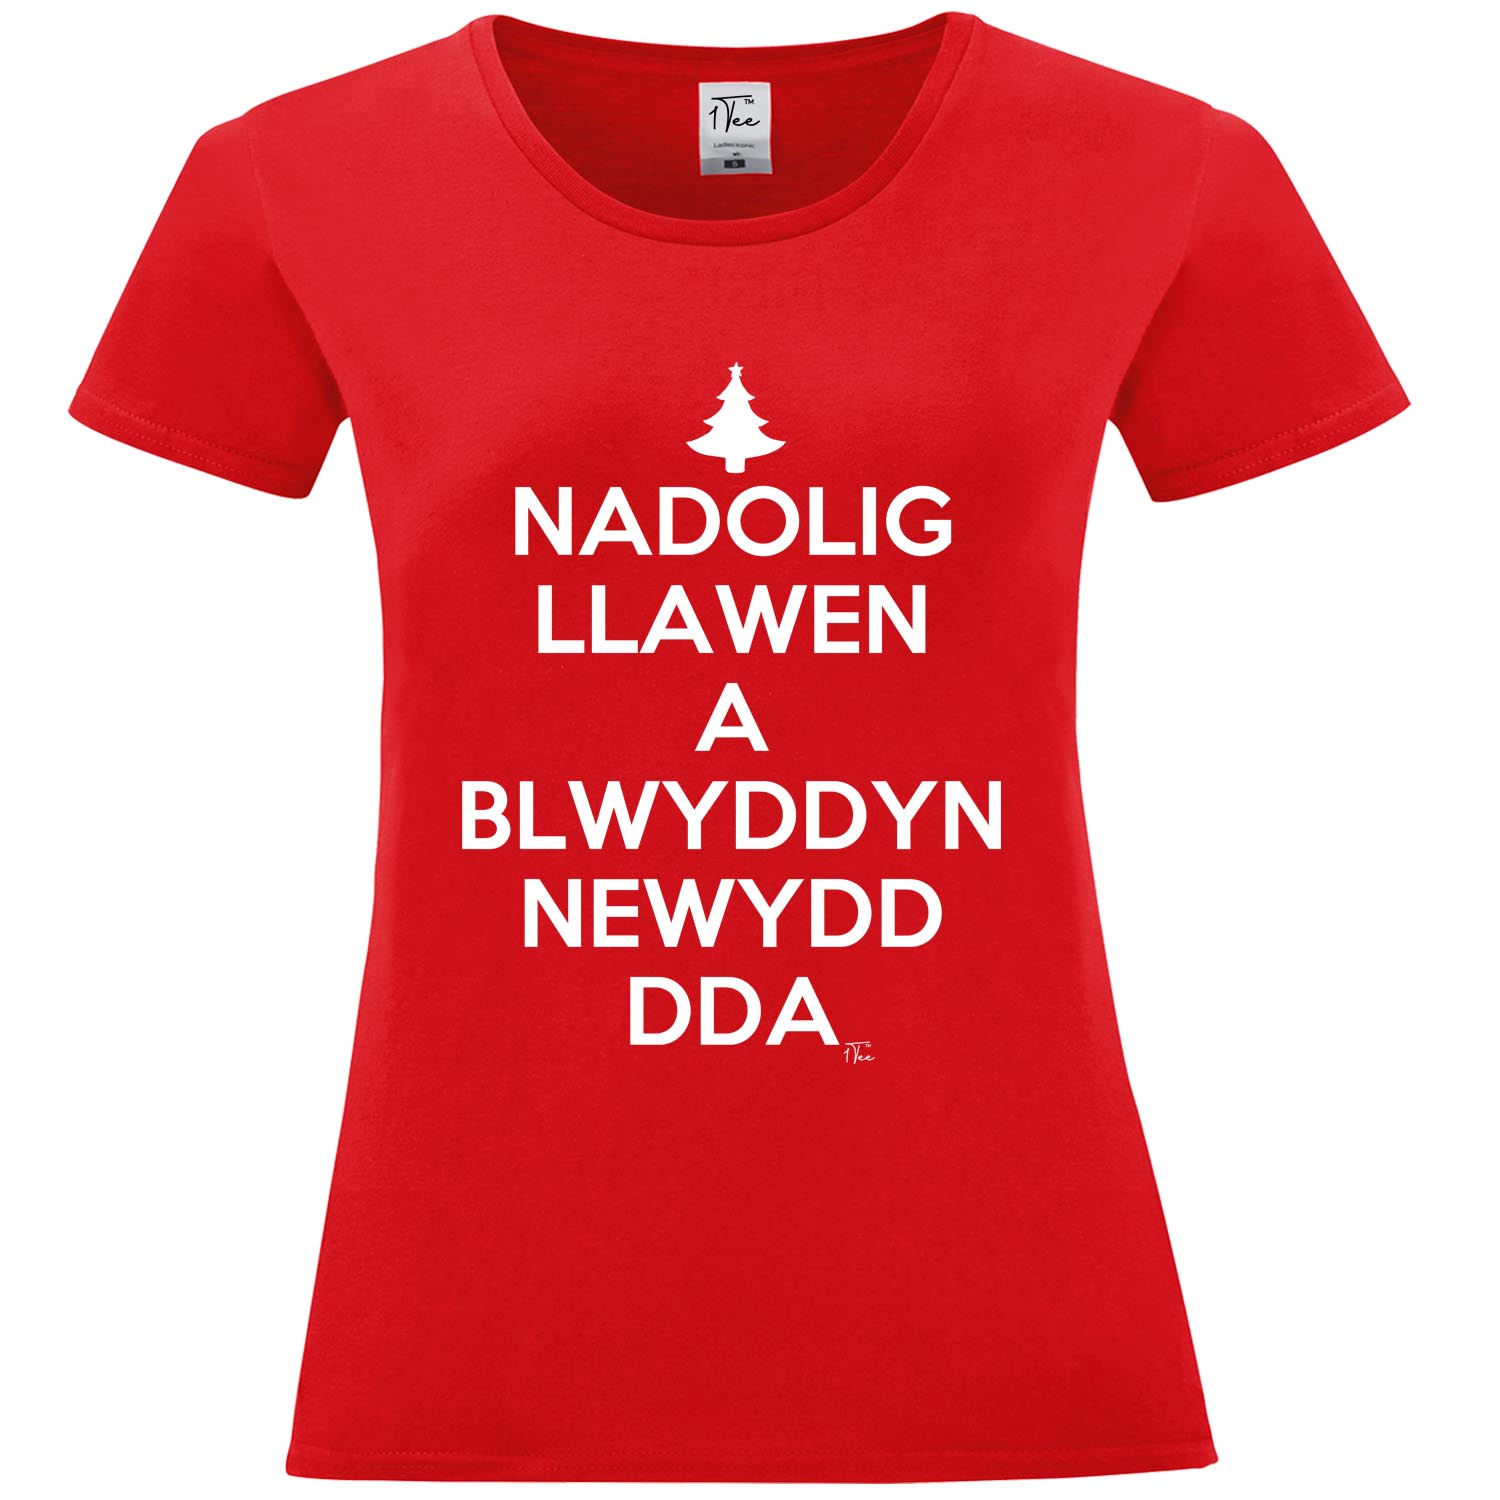 1Tee LINEA DONNA nadolig llawen un blwyddyn newydd DDA Gallese T-shirt 